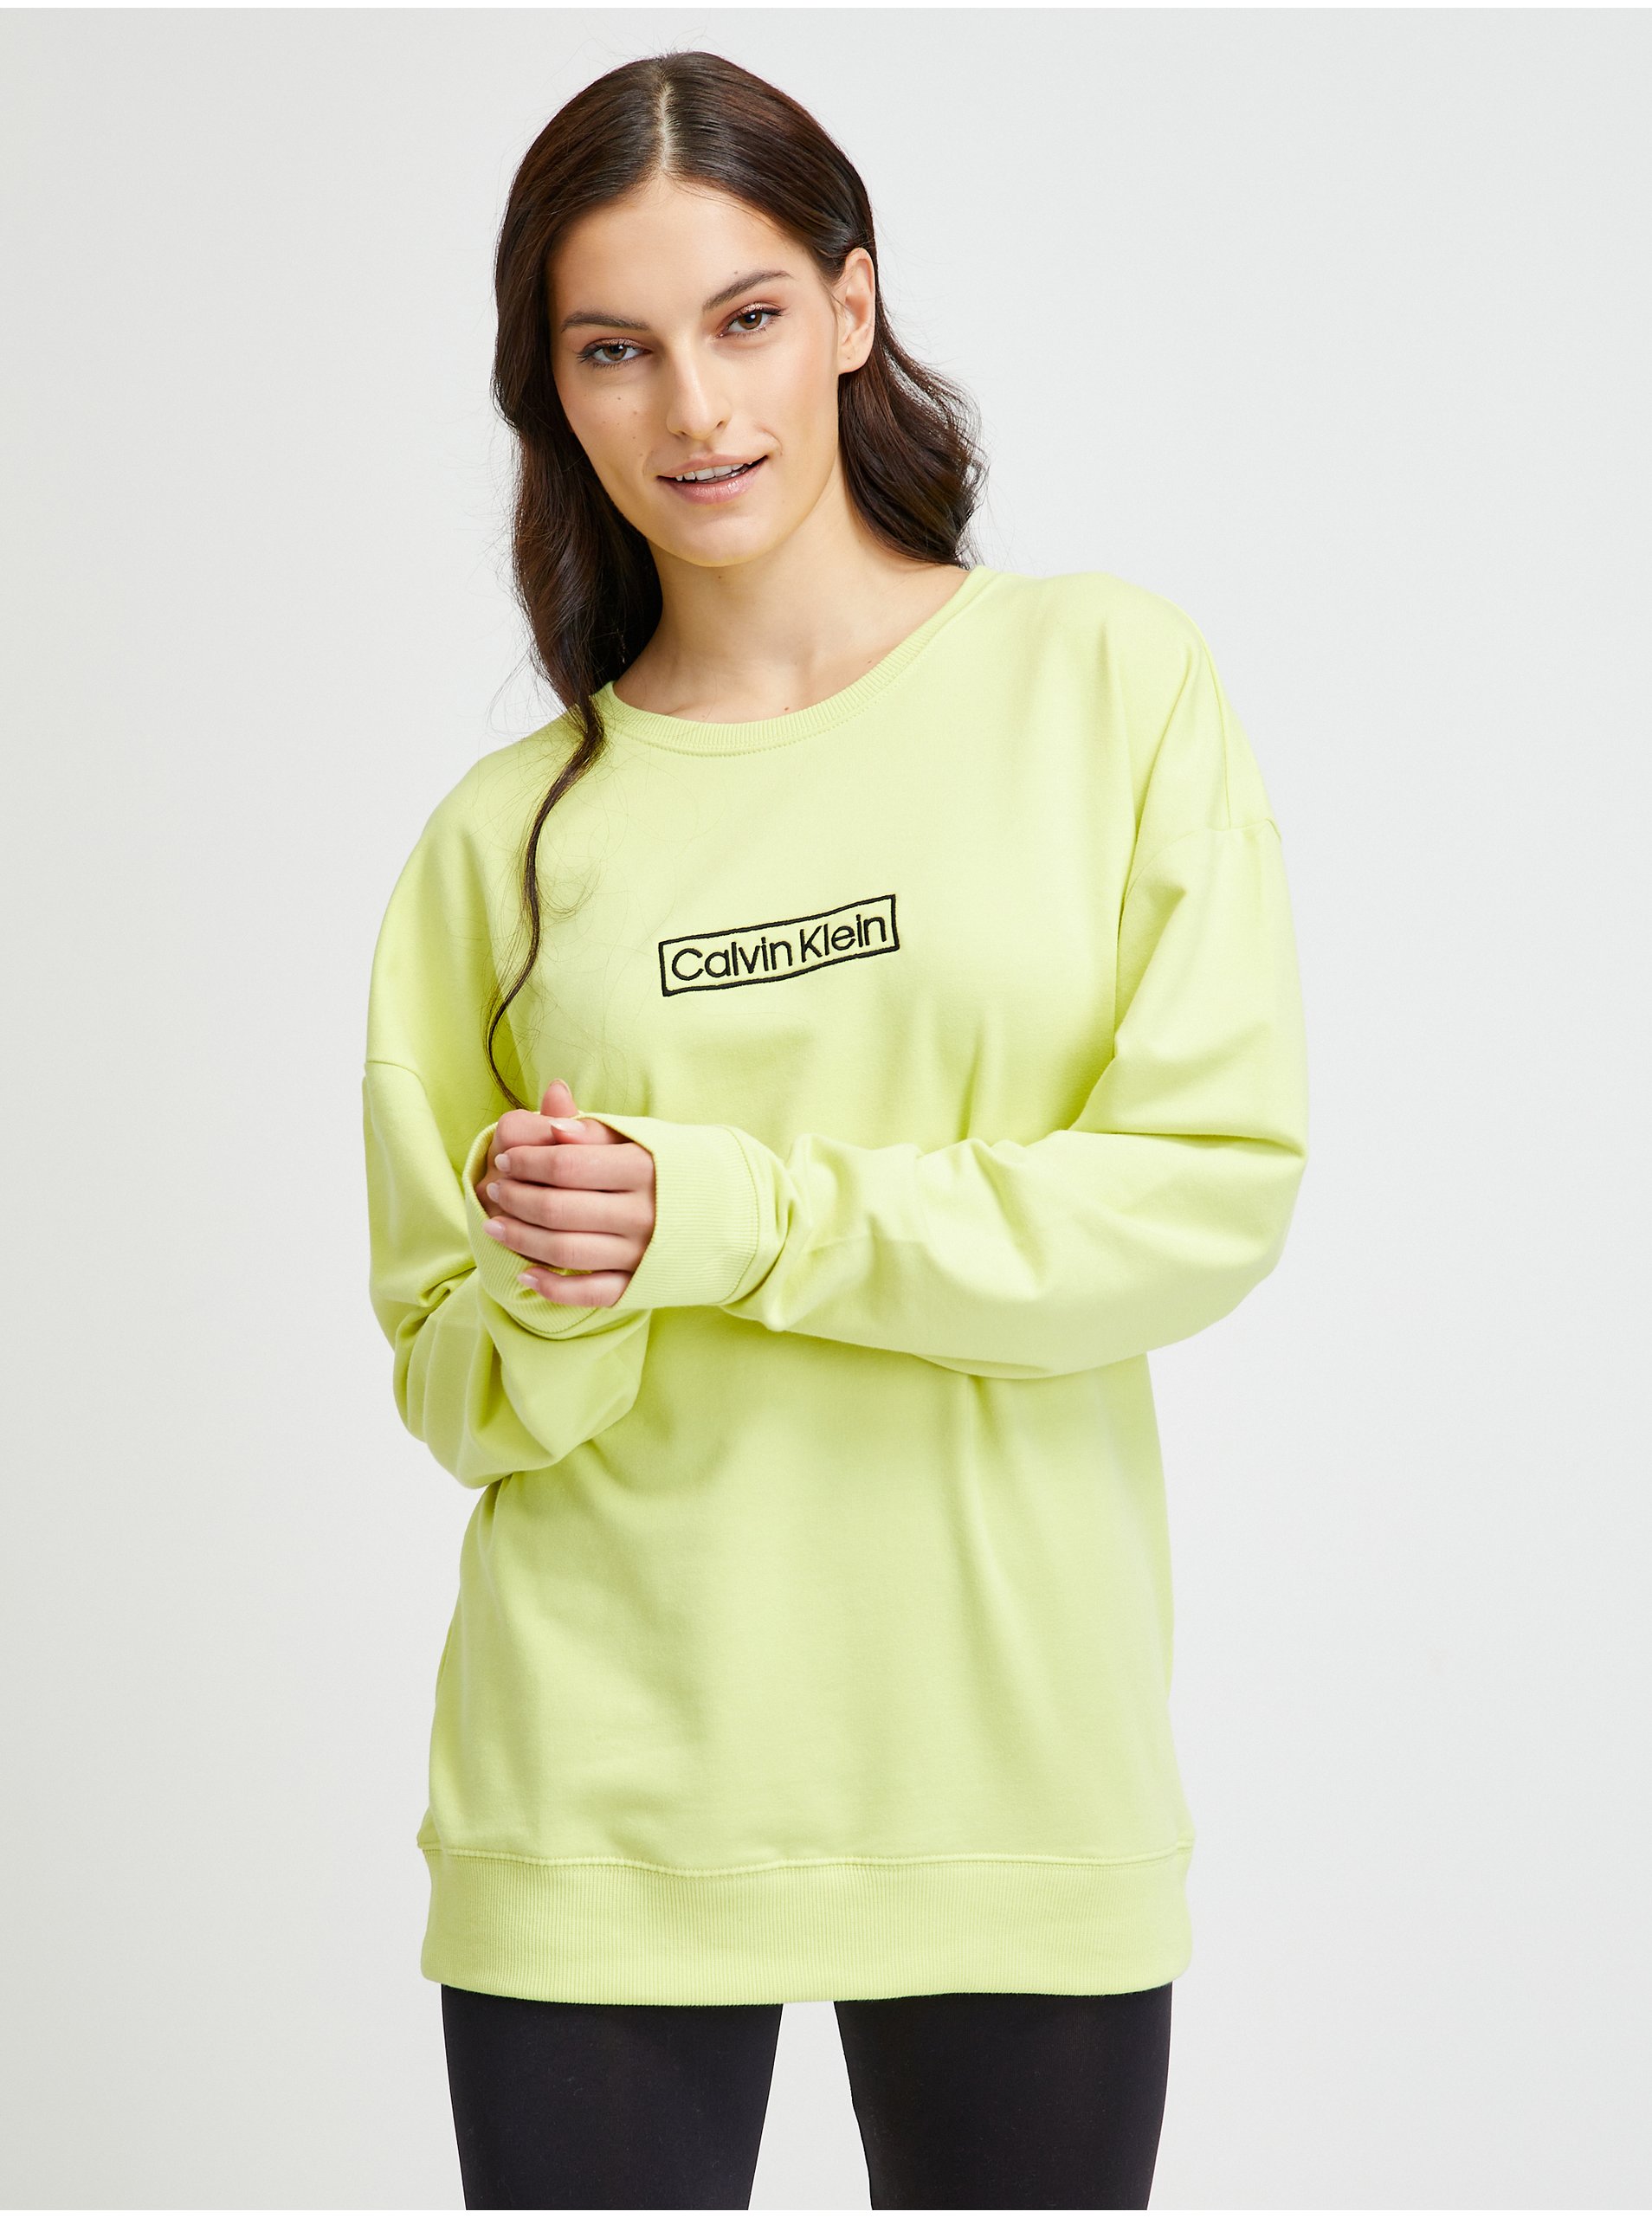 Lacno Tričká s dlhým rukávom pre ženy Calvin Klein - neónová zelená